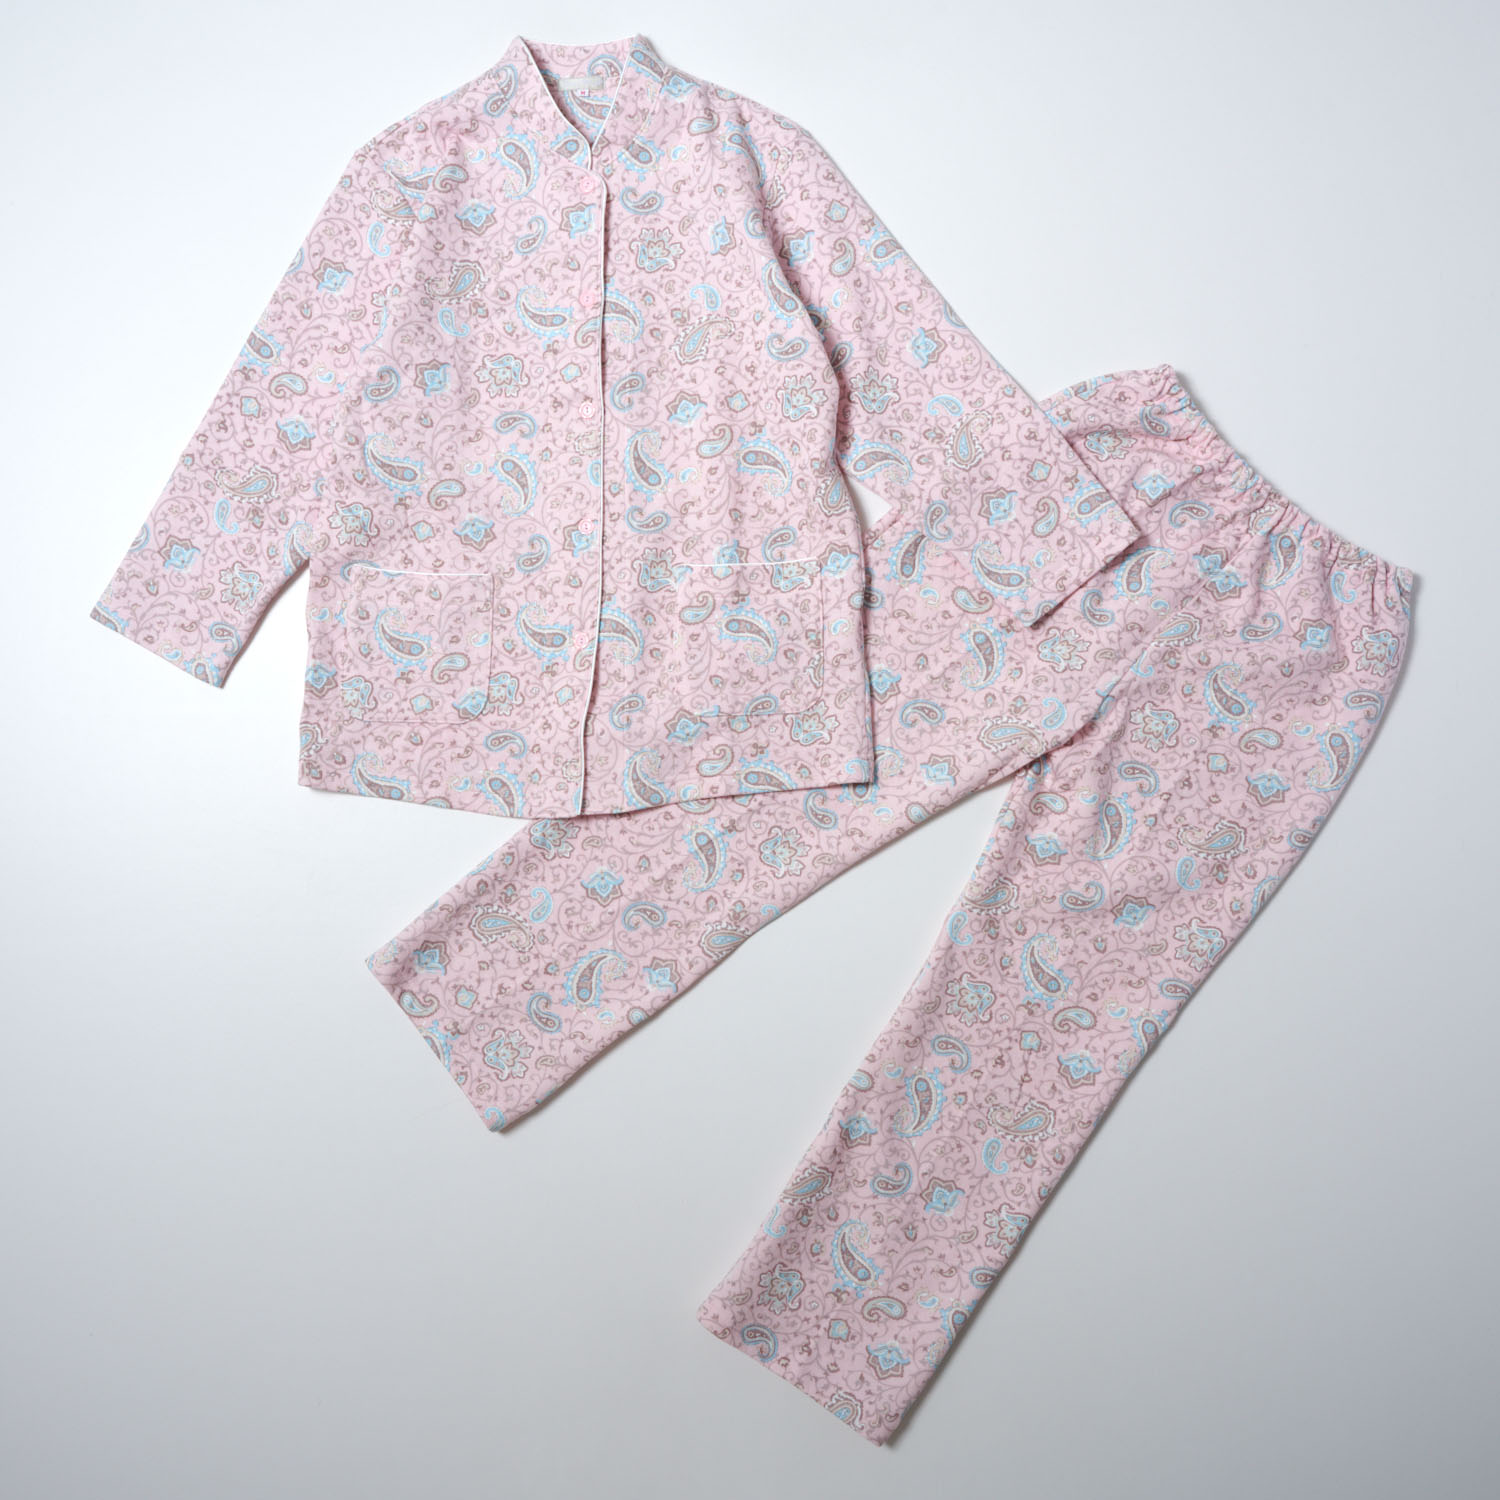 Wind ウインド レディースパジャマ ニットキルトつる花ペイズリー ピンク Msl 10l4 ギフト通販 なら東急百貨店ネットショッピング